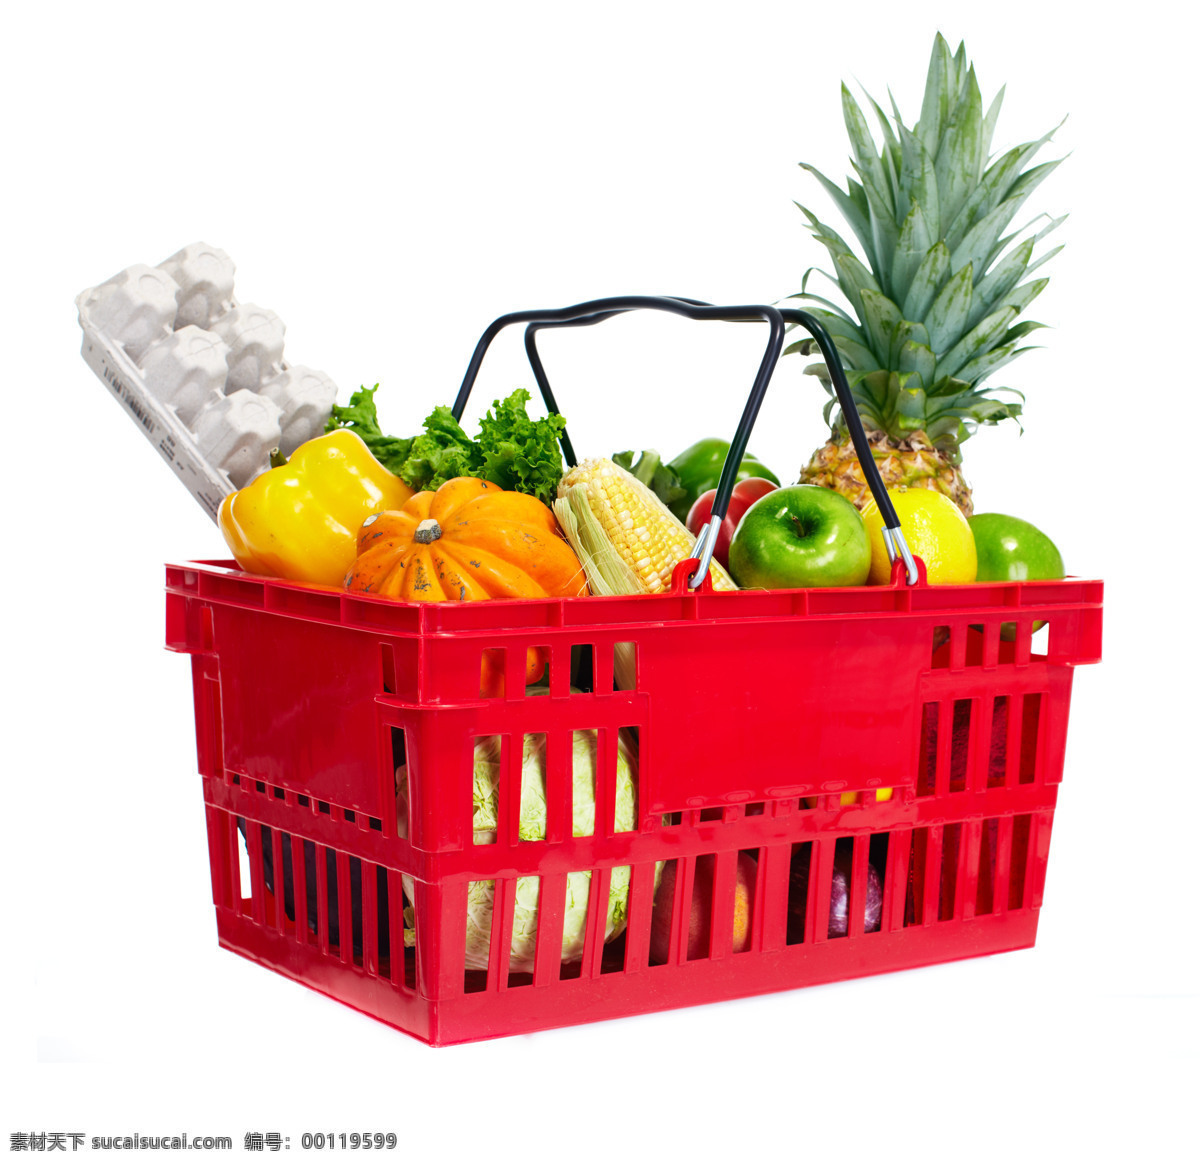 购物篮 里 水果 蔬菜 购物手推车 新鲜蔬菜 苹果 玉米 菠萝 辣椒 水果图片 餐饮美食